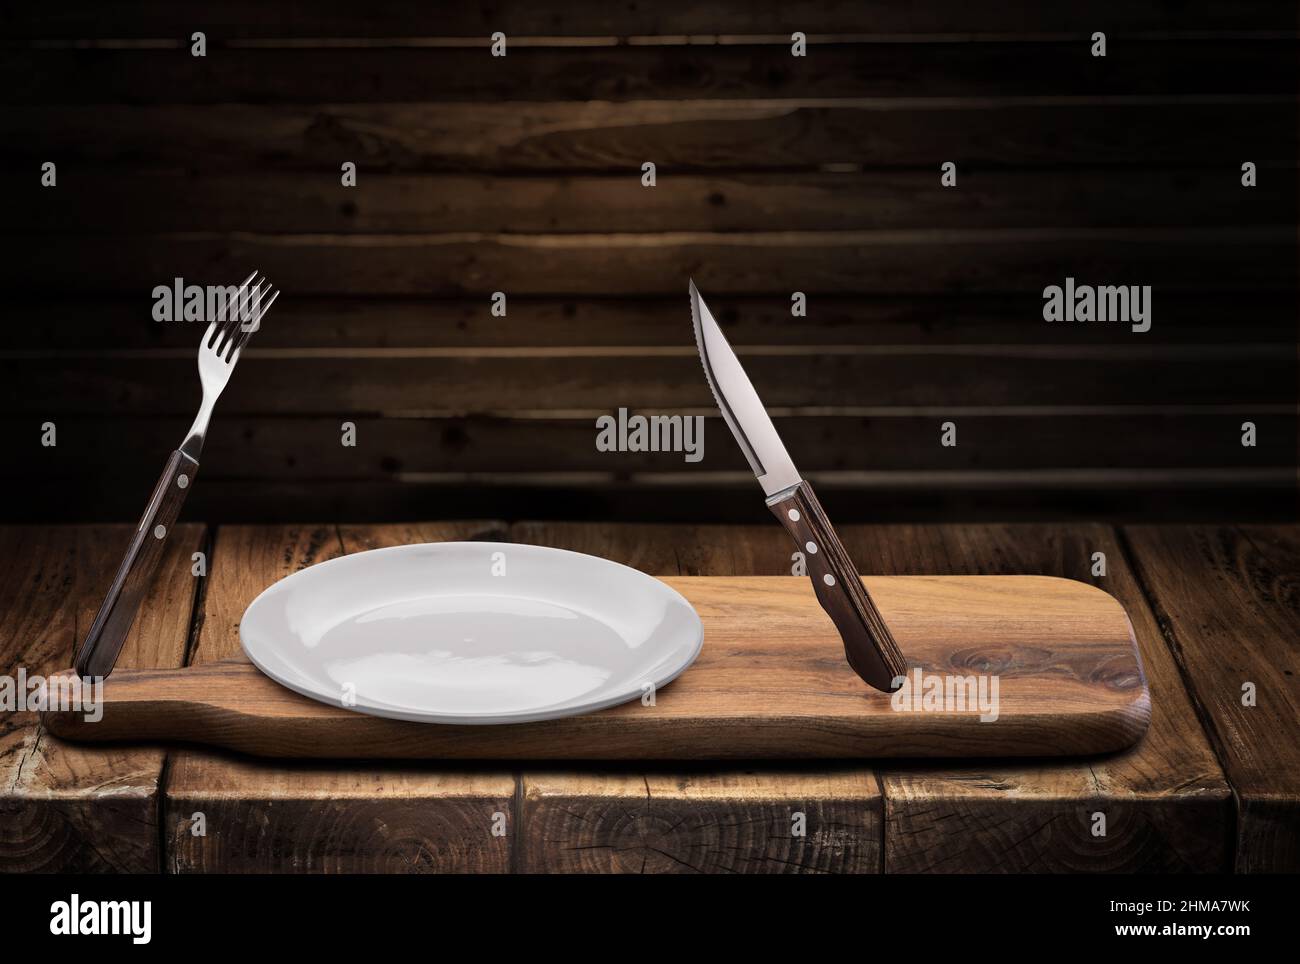 Immagine concettuale del pasto preso. Svuotare la piastra bianca, la forcella e il coltello vicino ad essa nell'aria. Foto Stock